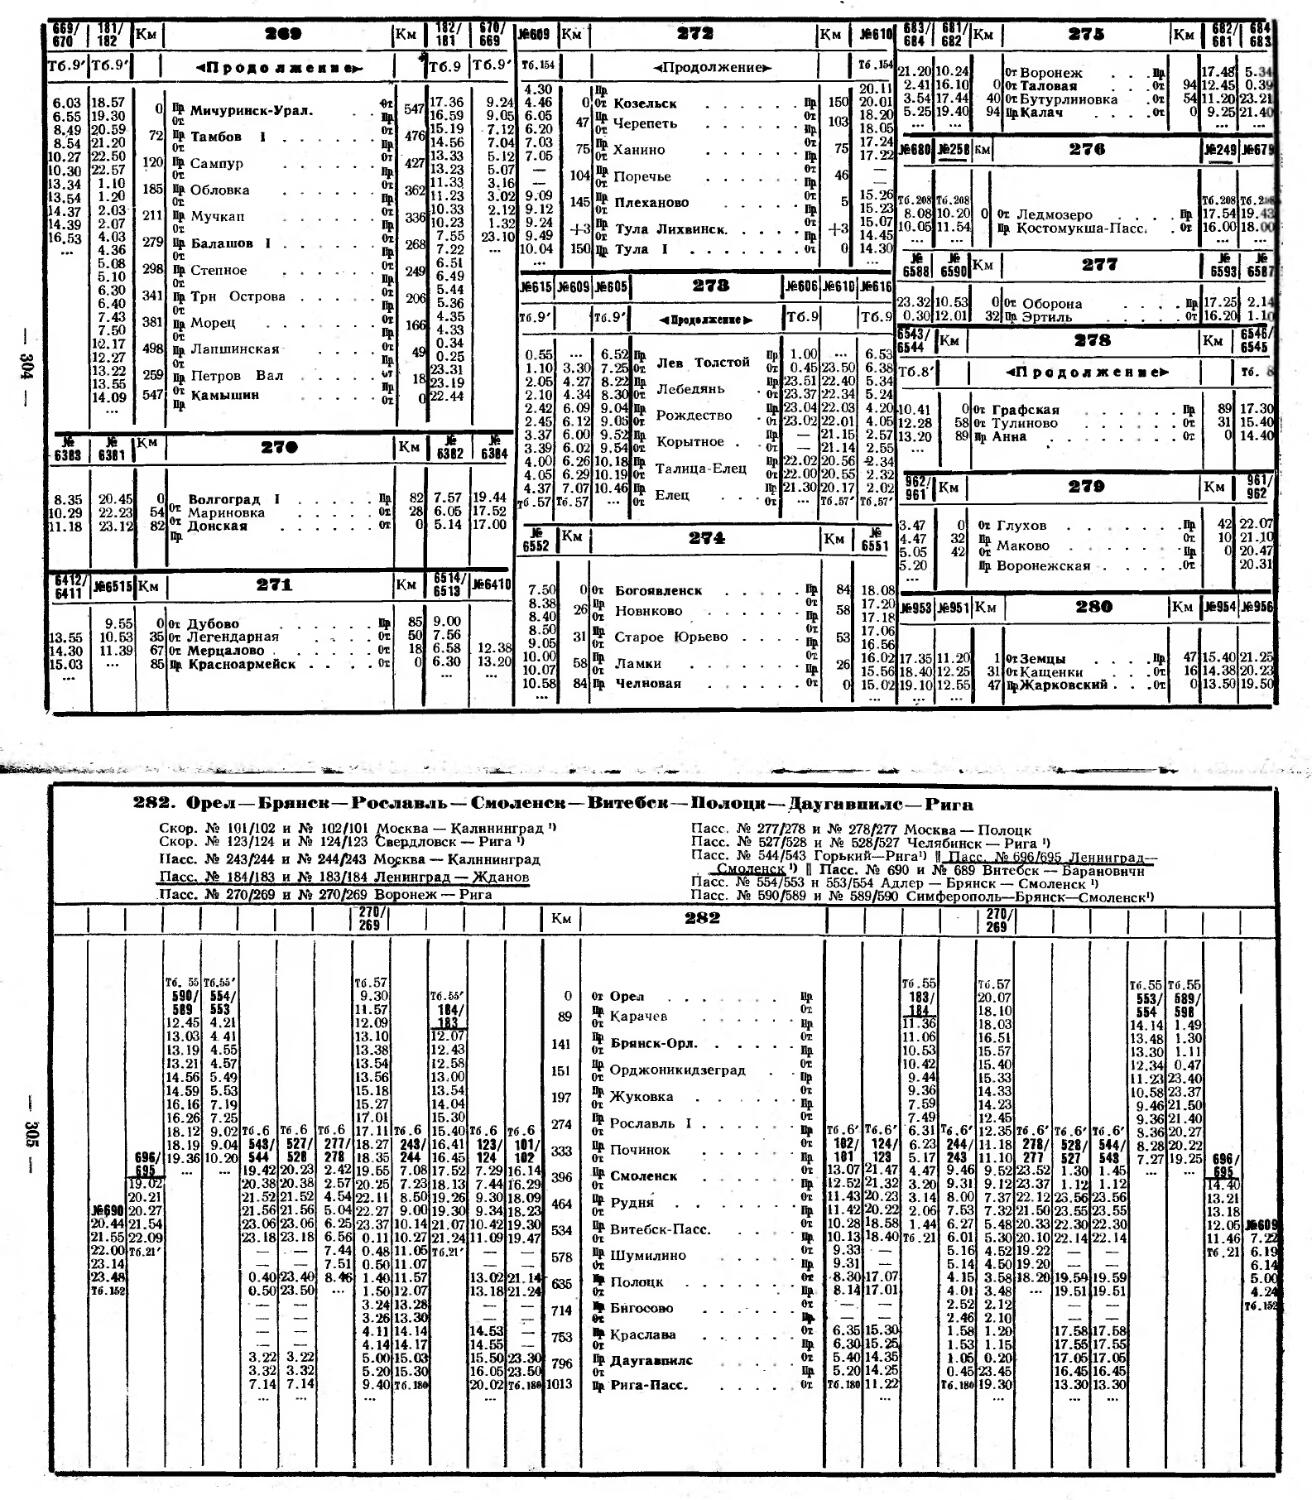 Расписание движения поездов на сегодня. Расписание движения поездов в виде таблицы.